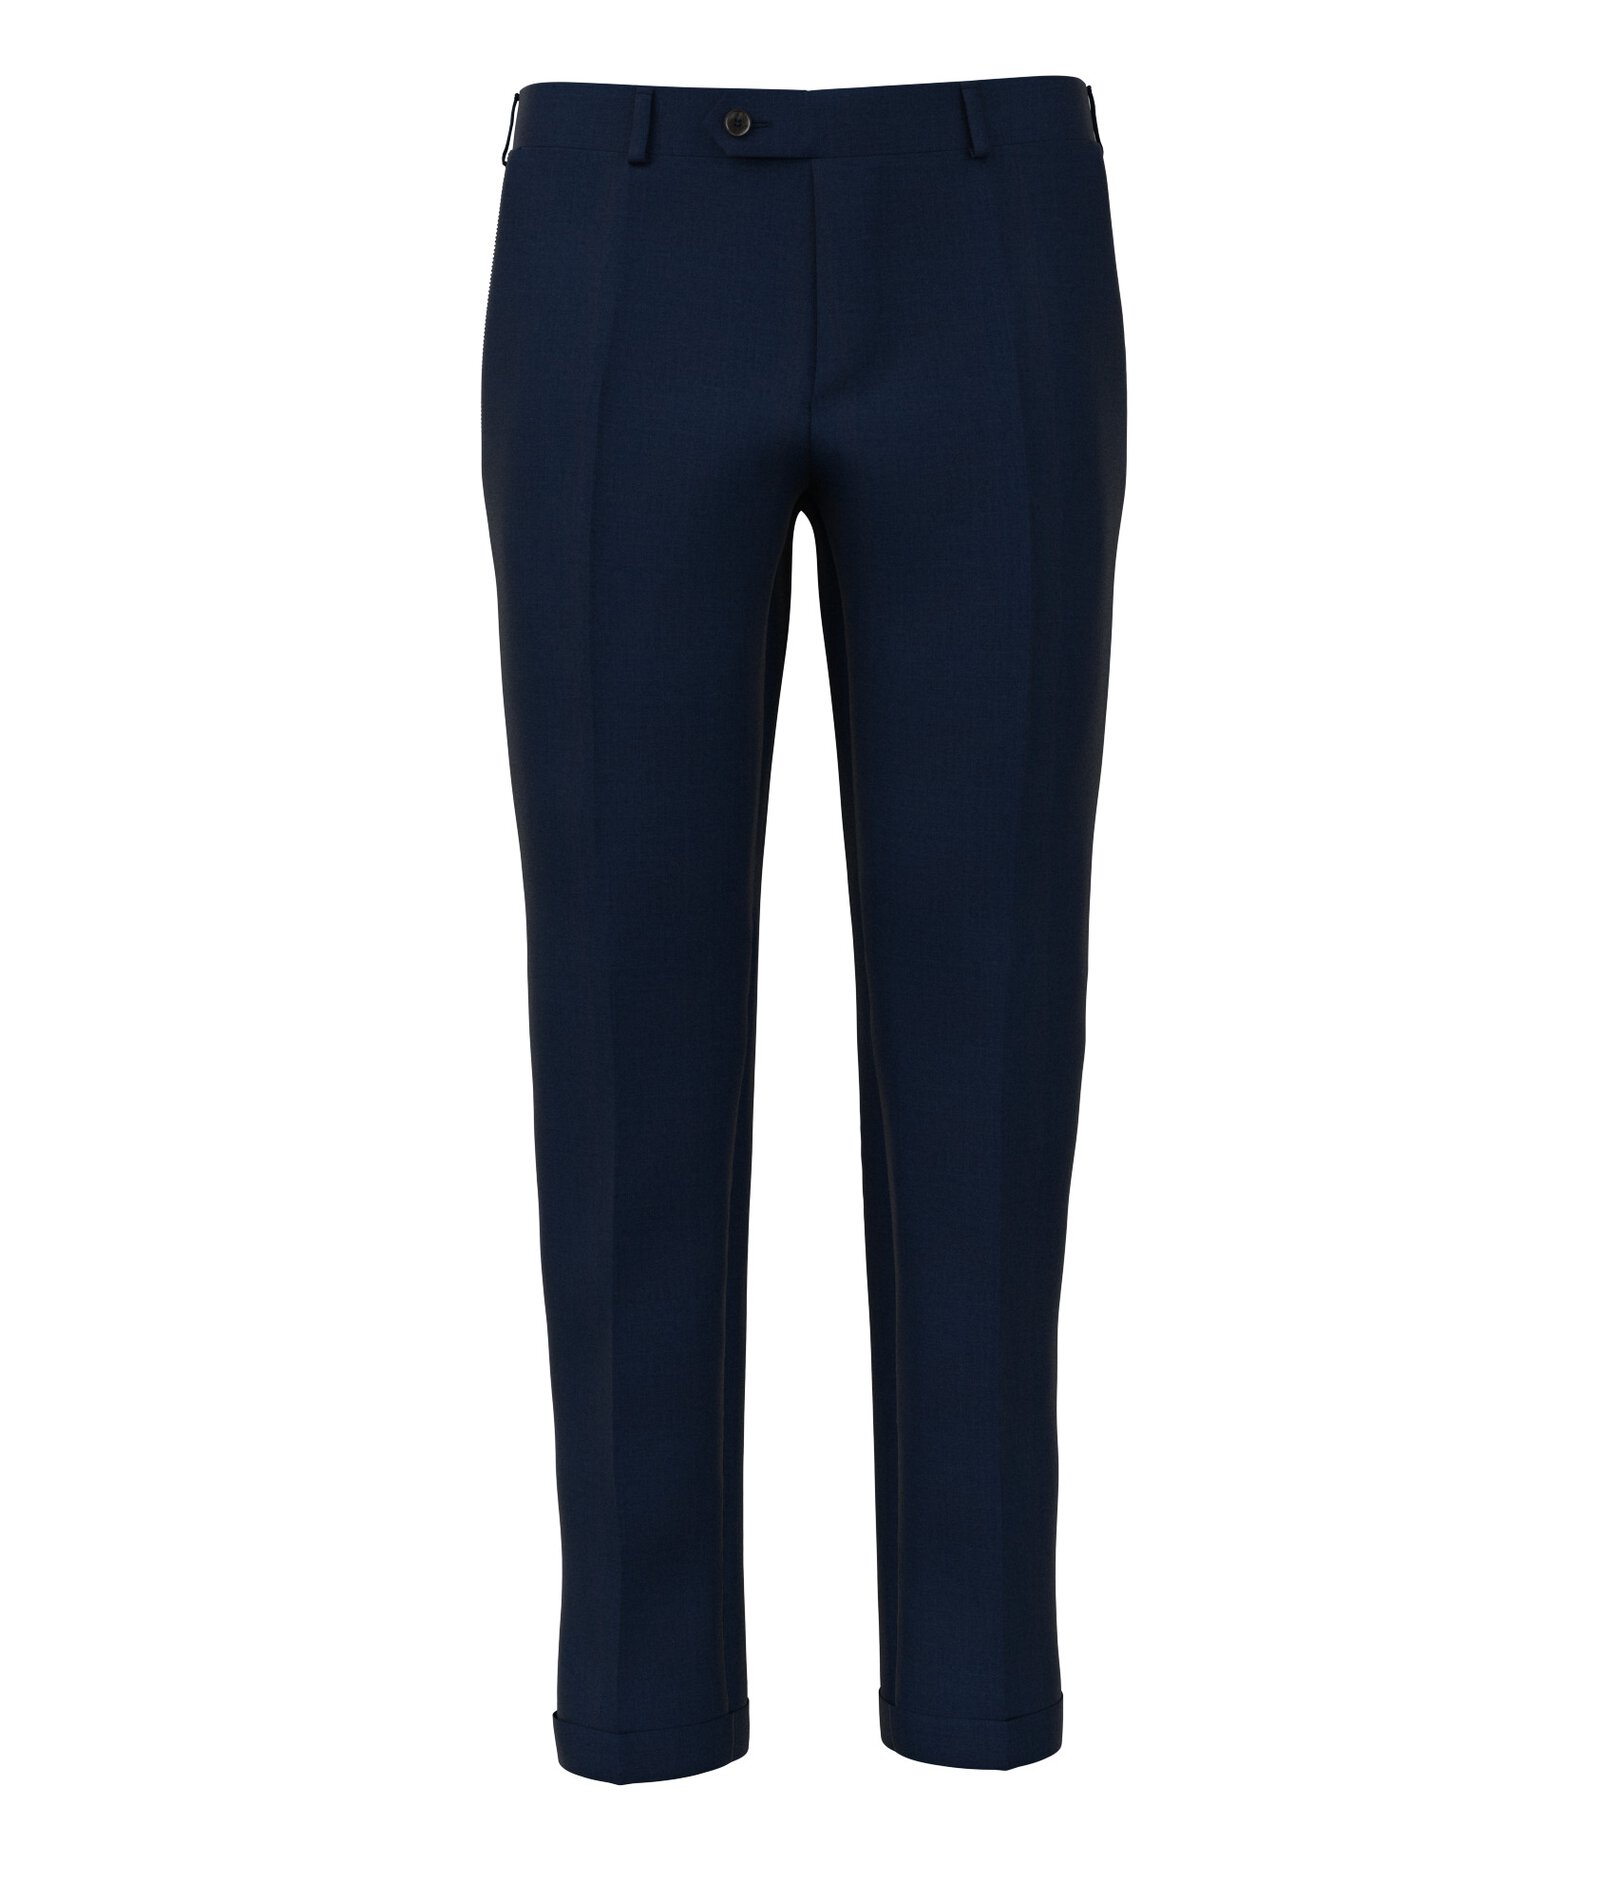 Image of Pantaloni da uomo su misura, Reda, Blu 100% Lana Merino, Quattro Stagioni | Lanieri